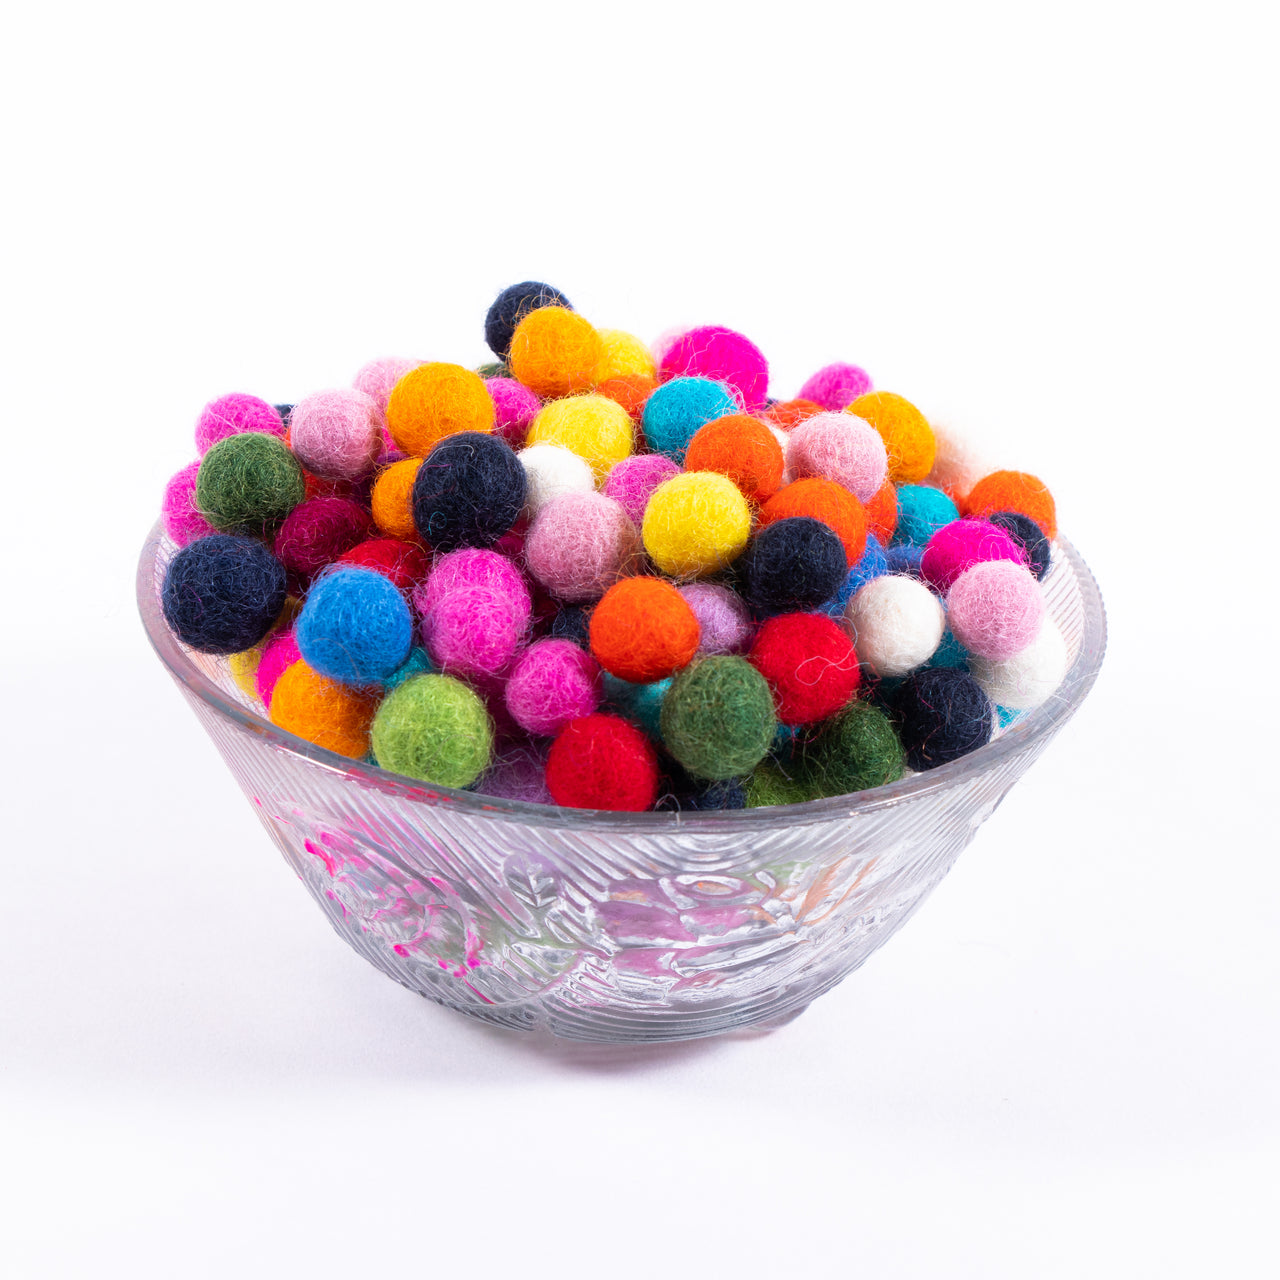 1.5 cm Felt Balls/ Felt Balls Wholesale